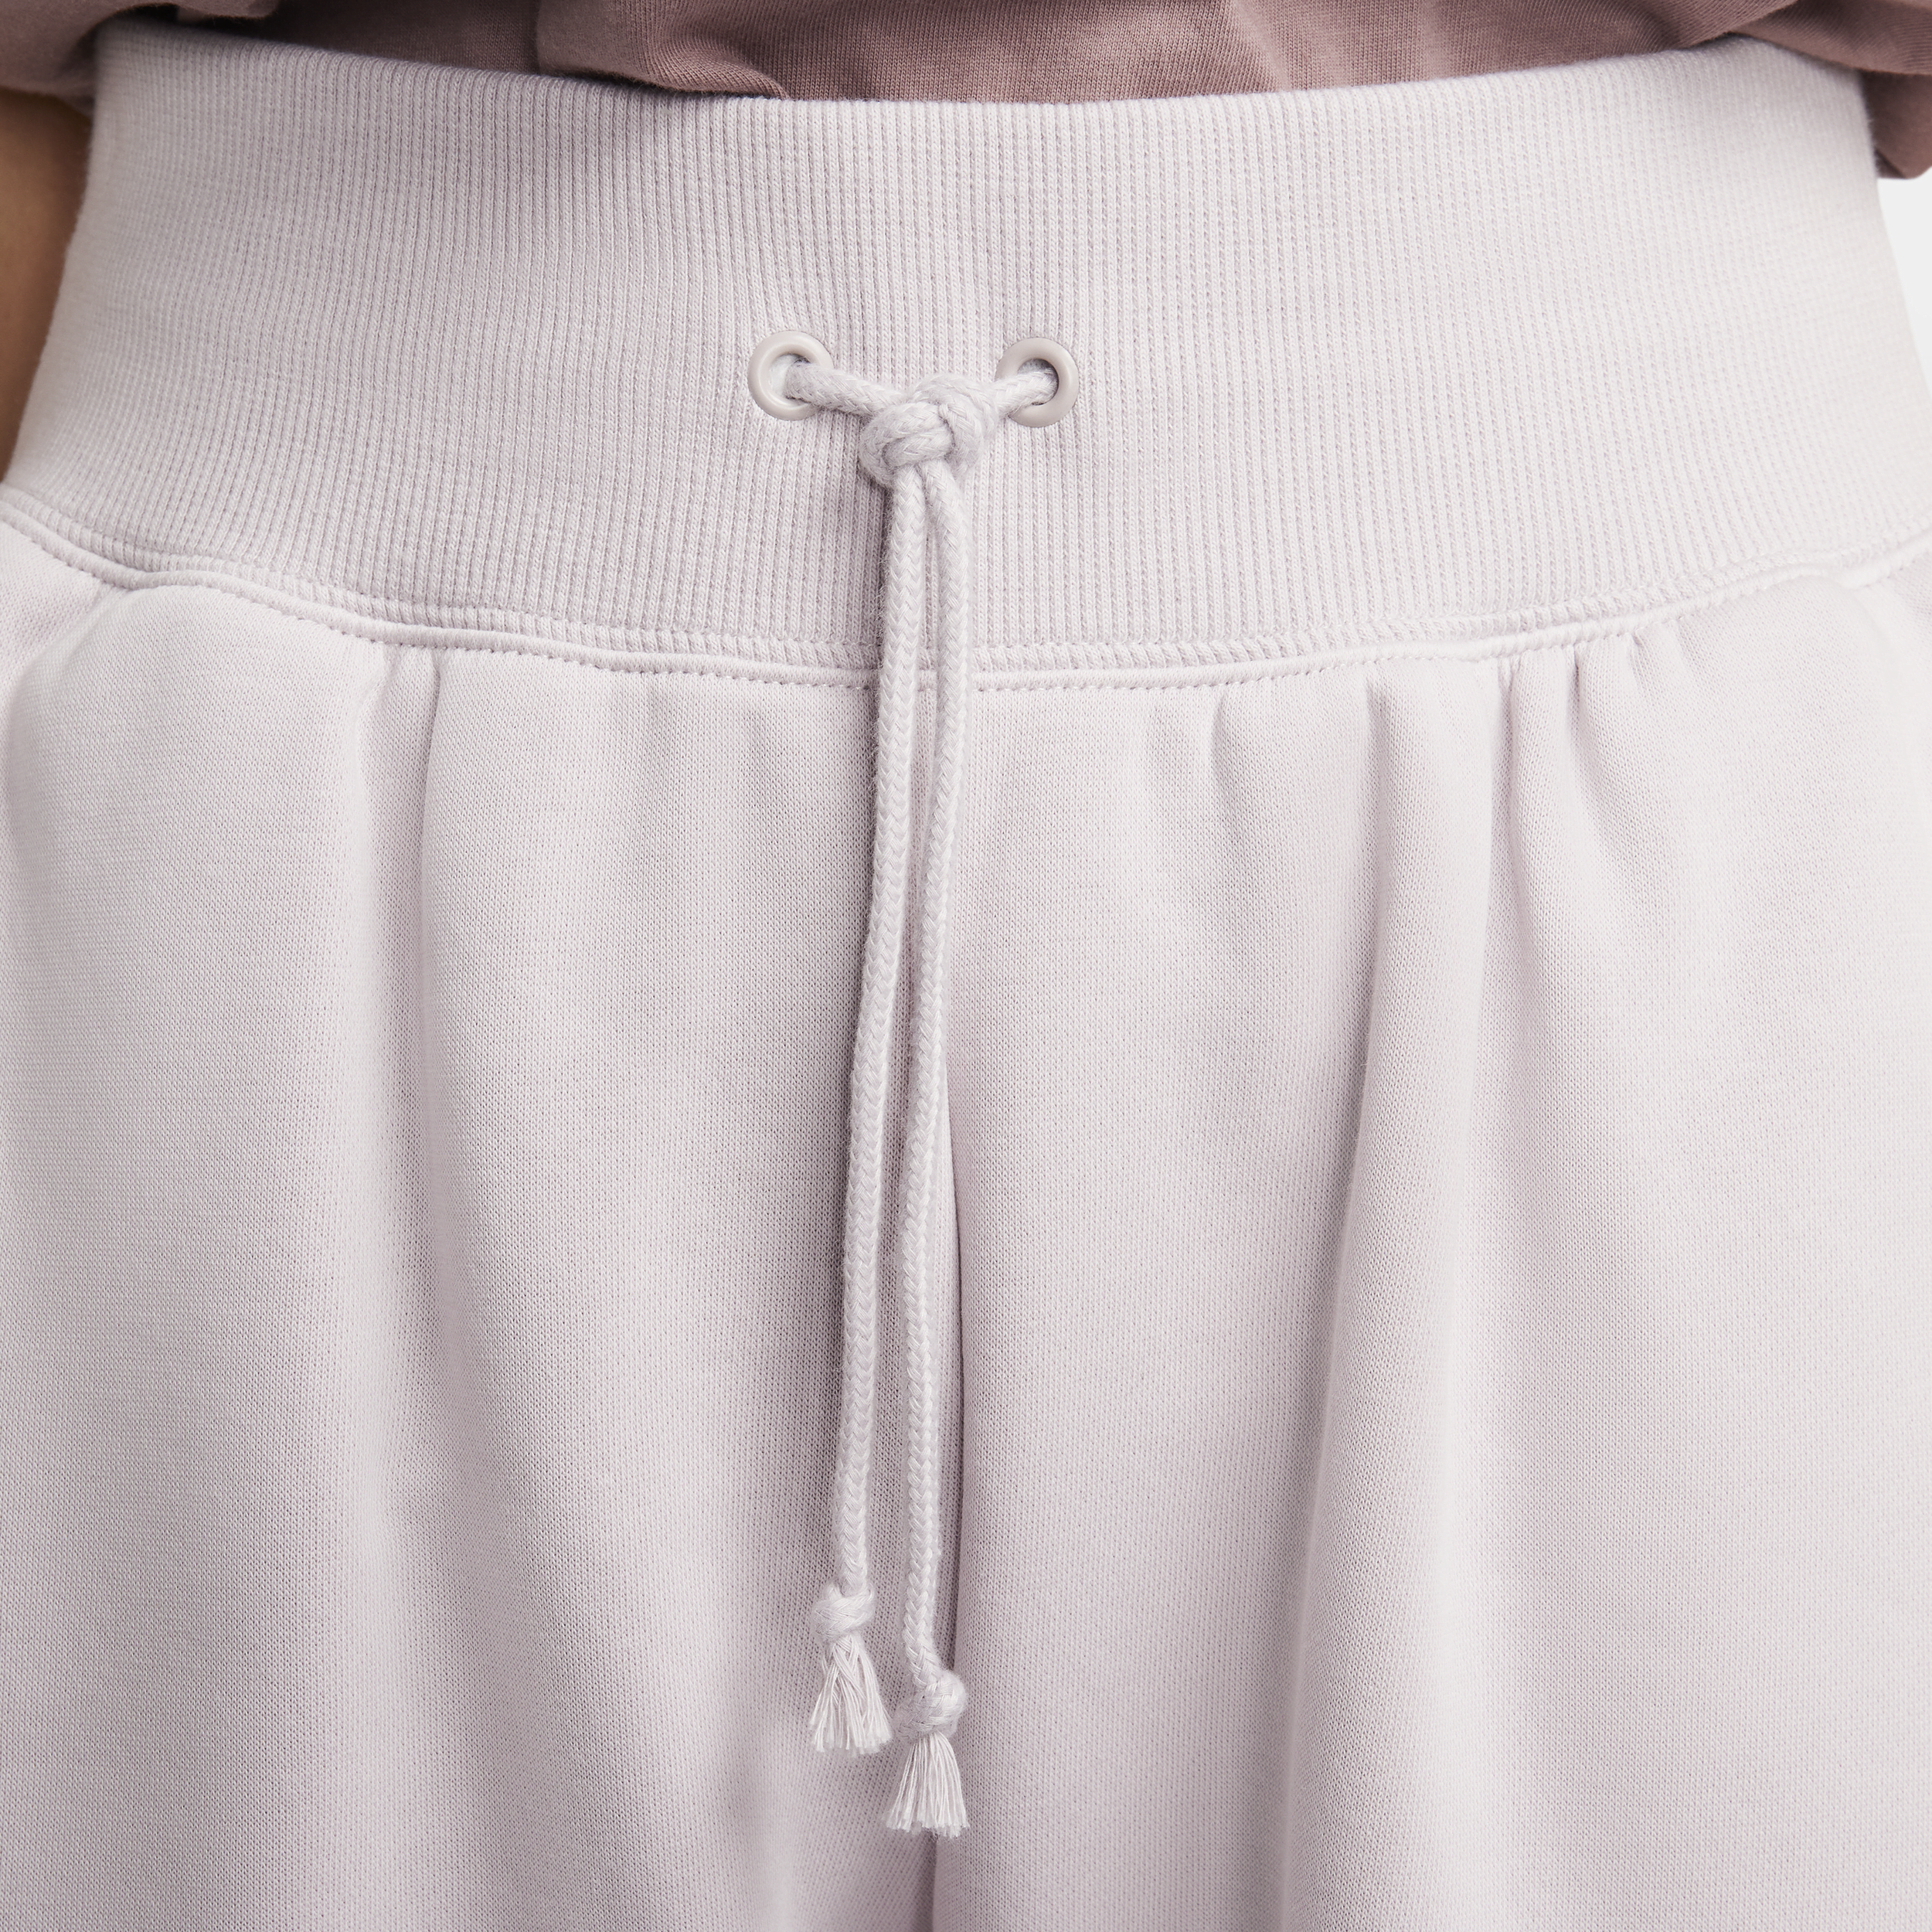 Nike Sportswear Phoenix Fleece oversized joggingbroek met logo voor dames Paars